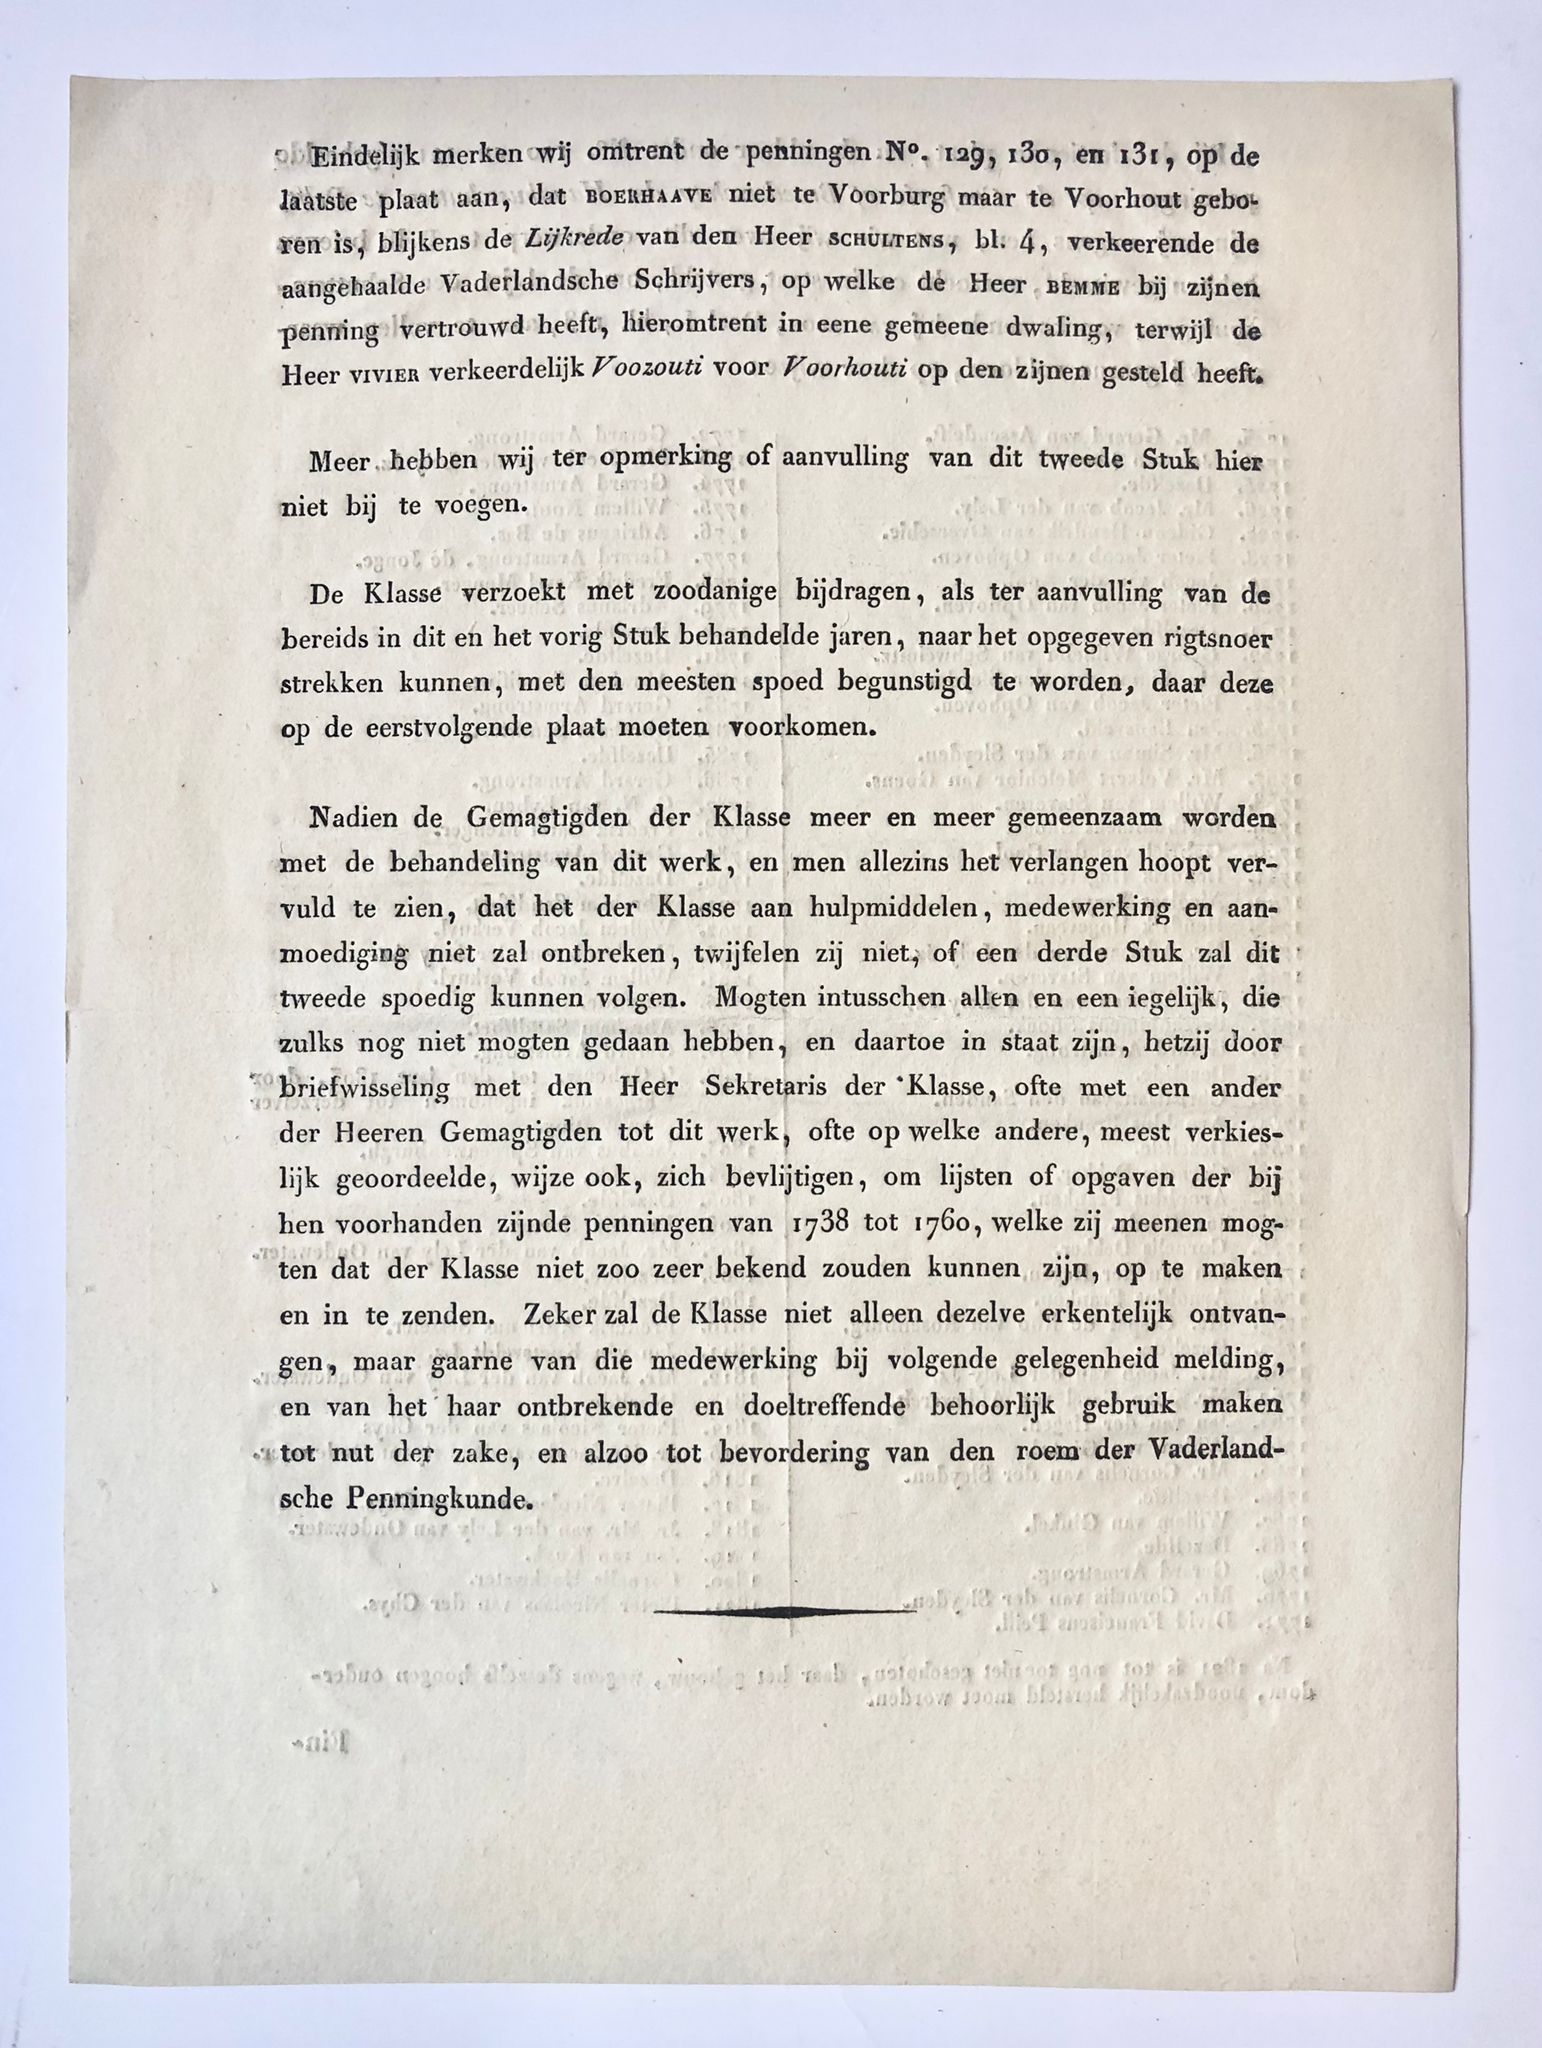 [Printed publication, Delft 1821] Lijst schutterskoningen 1723-1821 van de Conferentie of broederschap der Handbusschutters te Delft. 1 blad, gedrukt.